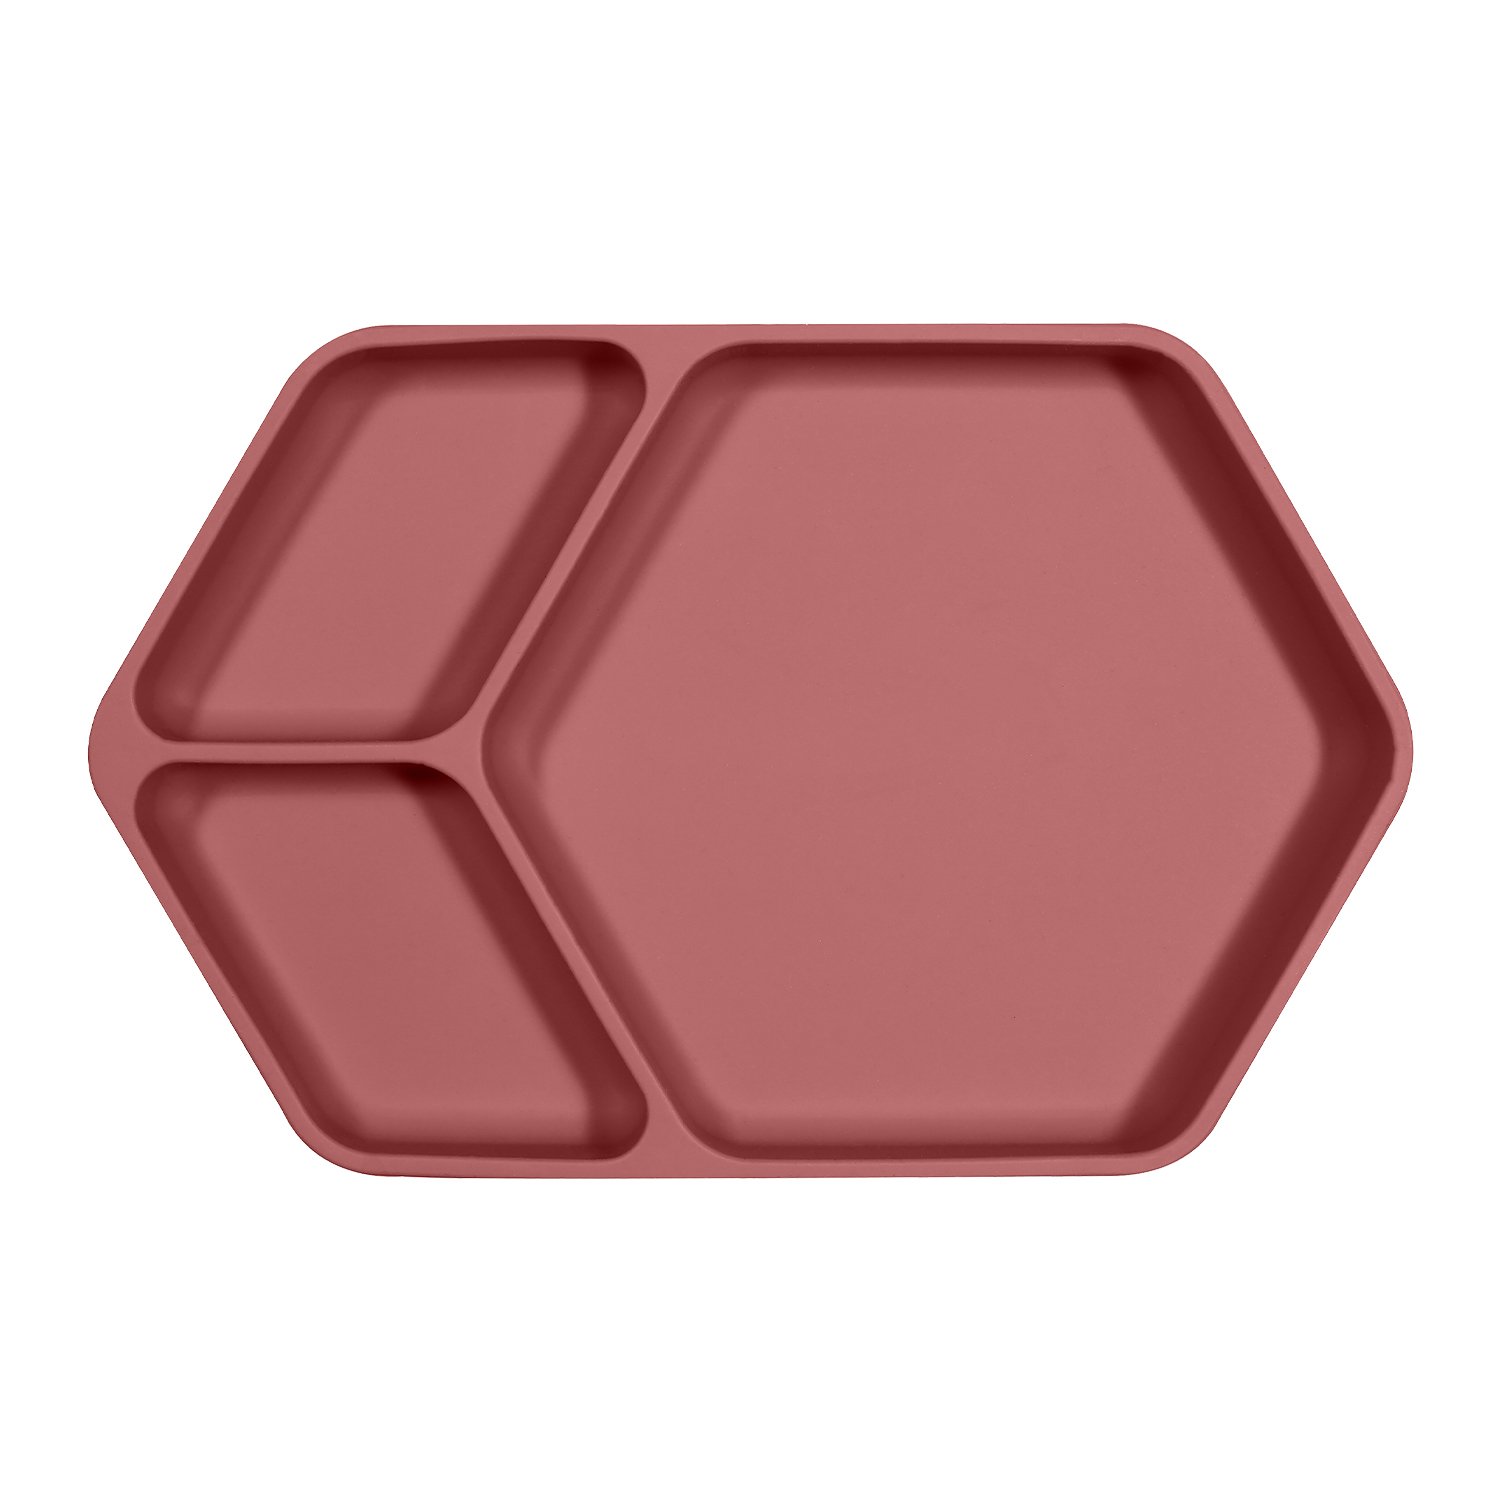 Assiette ventouse carré en silicone (Kindsgut) - Image 1